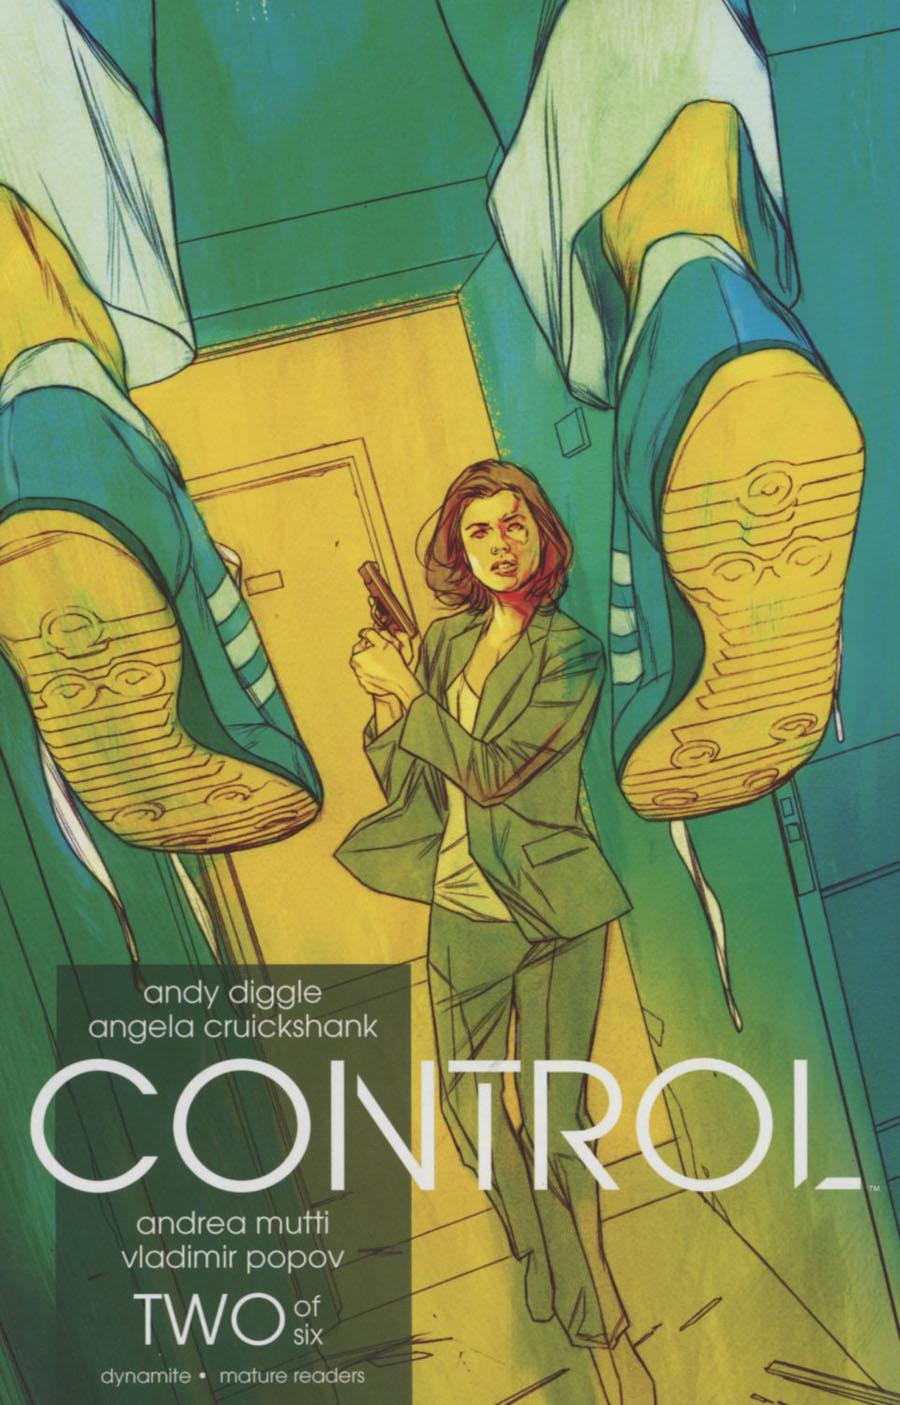 Control Vol. 1 #2